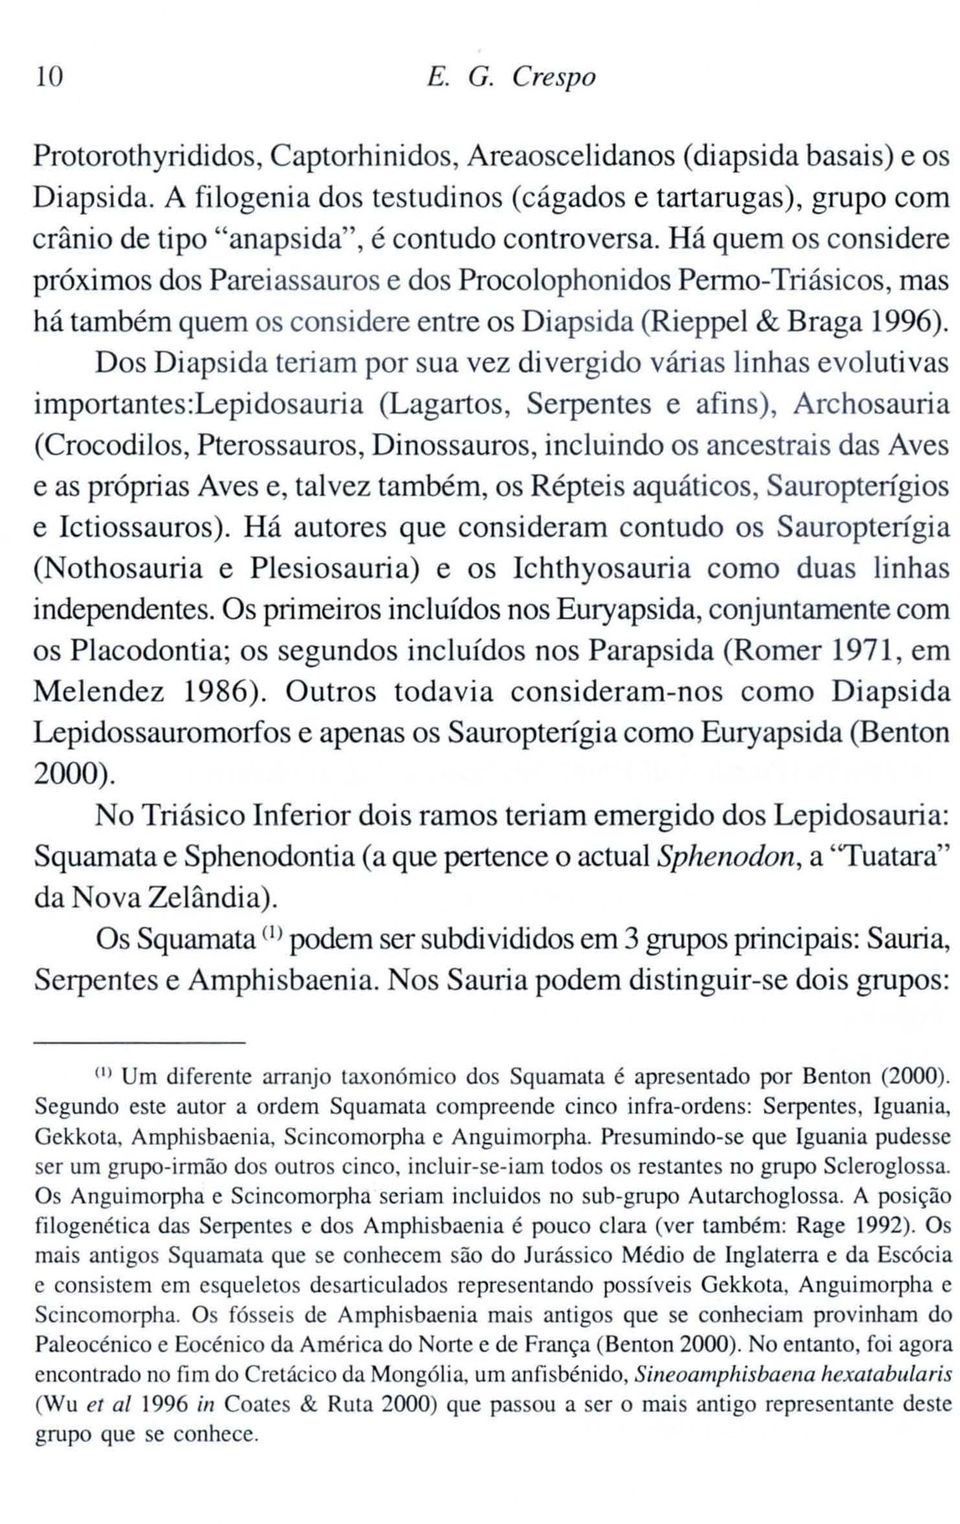 Há quem os considere próximos dos Pareiassauros e dos Procolophonidos Permo-Triásicos, mas há também quem os considere entre os Diapsida (Rieppel & Braga 1996).